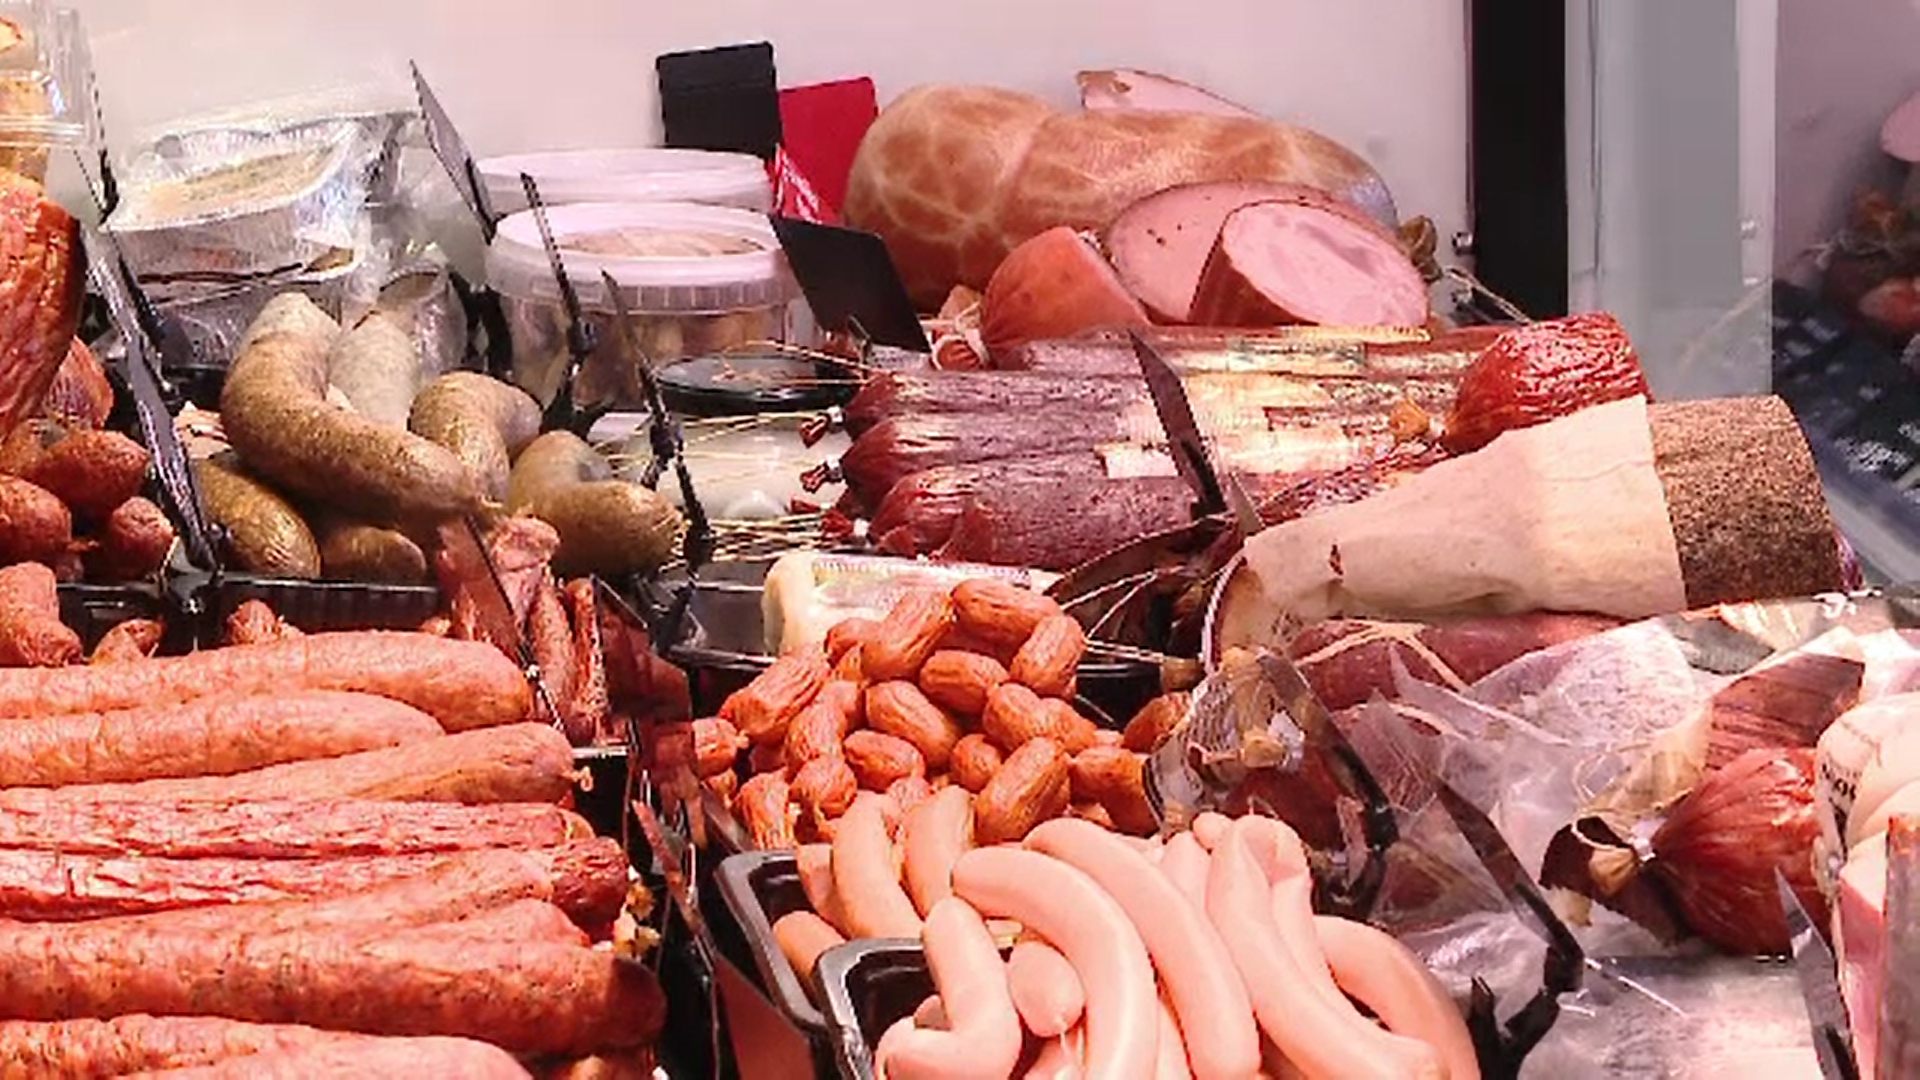 Carnea de porc va fi mai ieftină de Crăciun. În toată Europa este excedent de carne